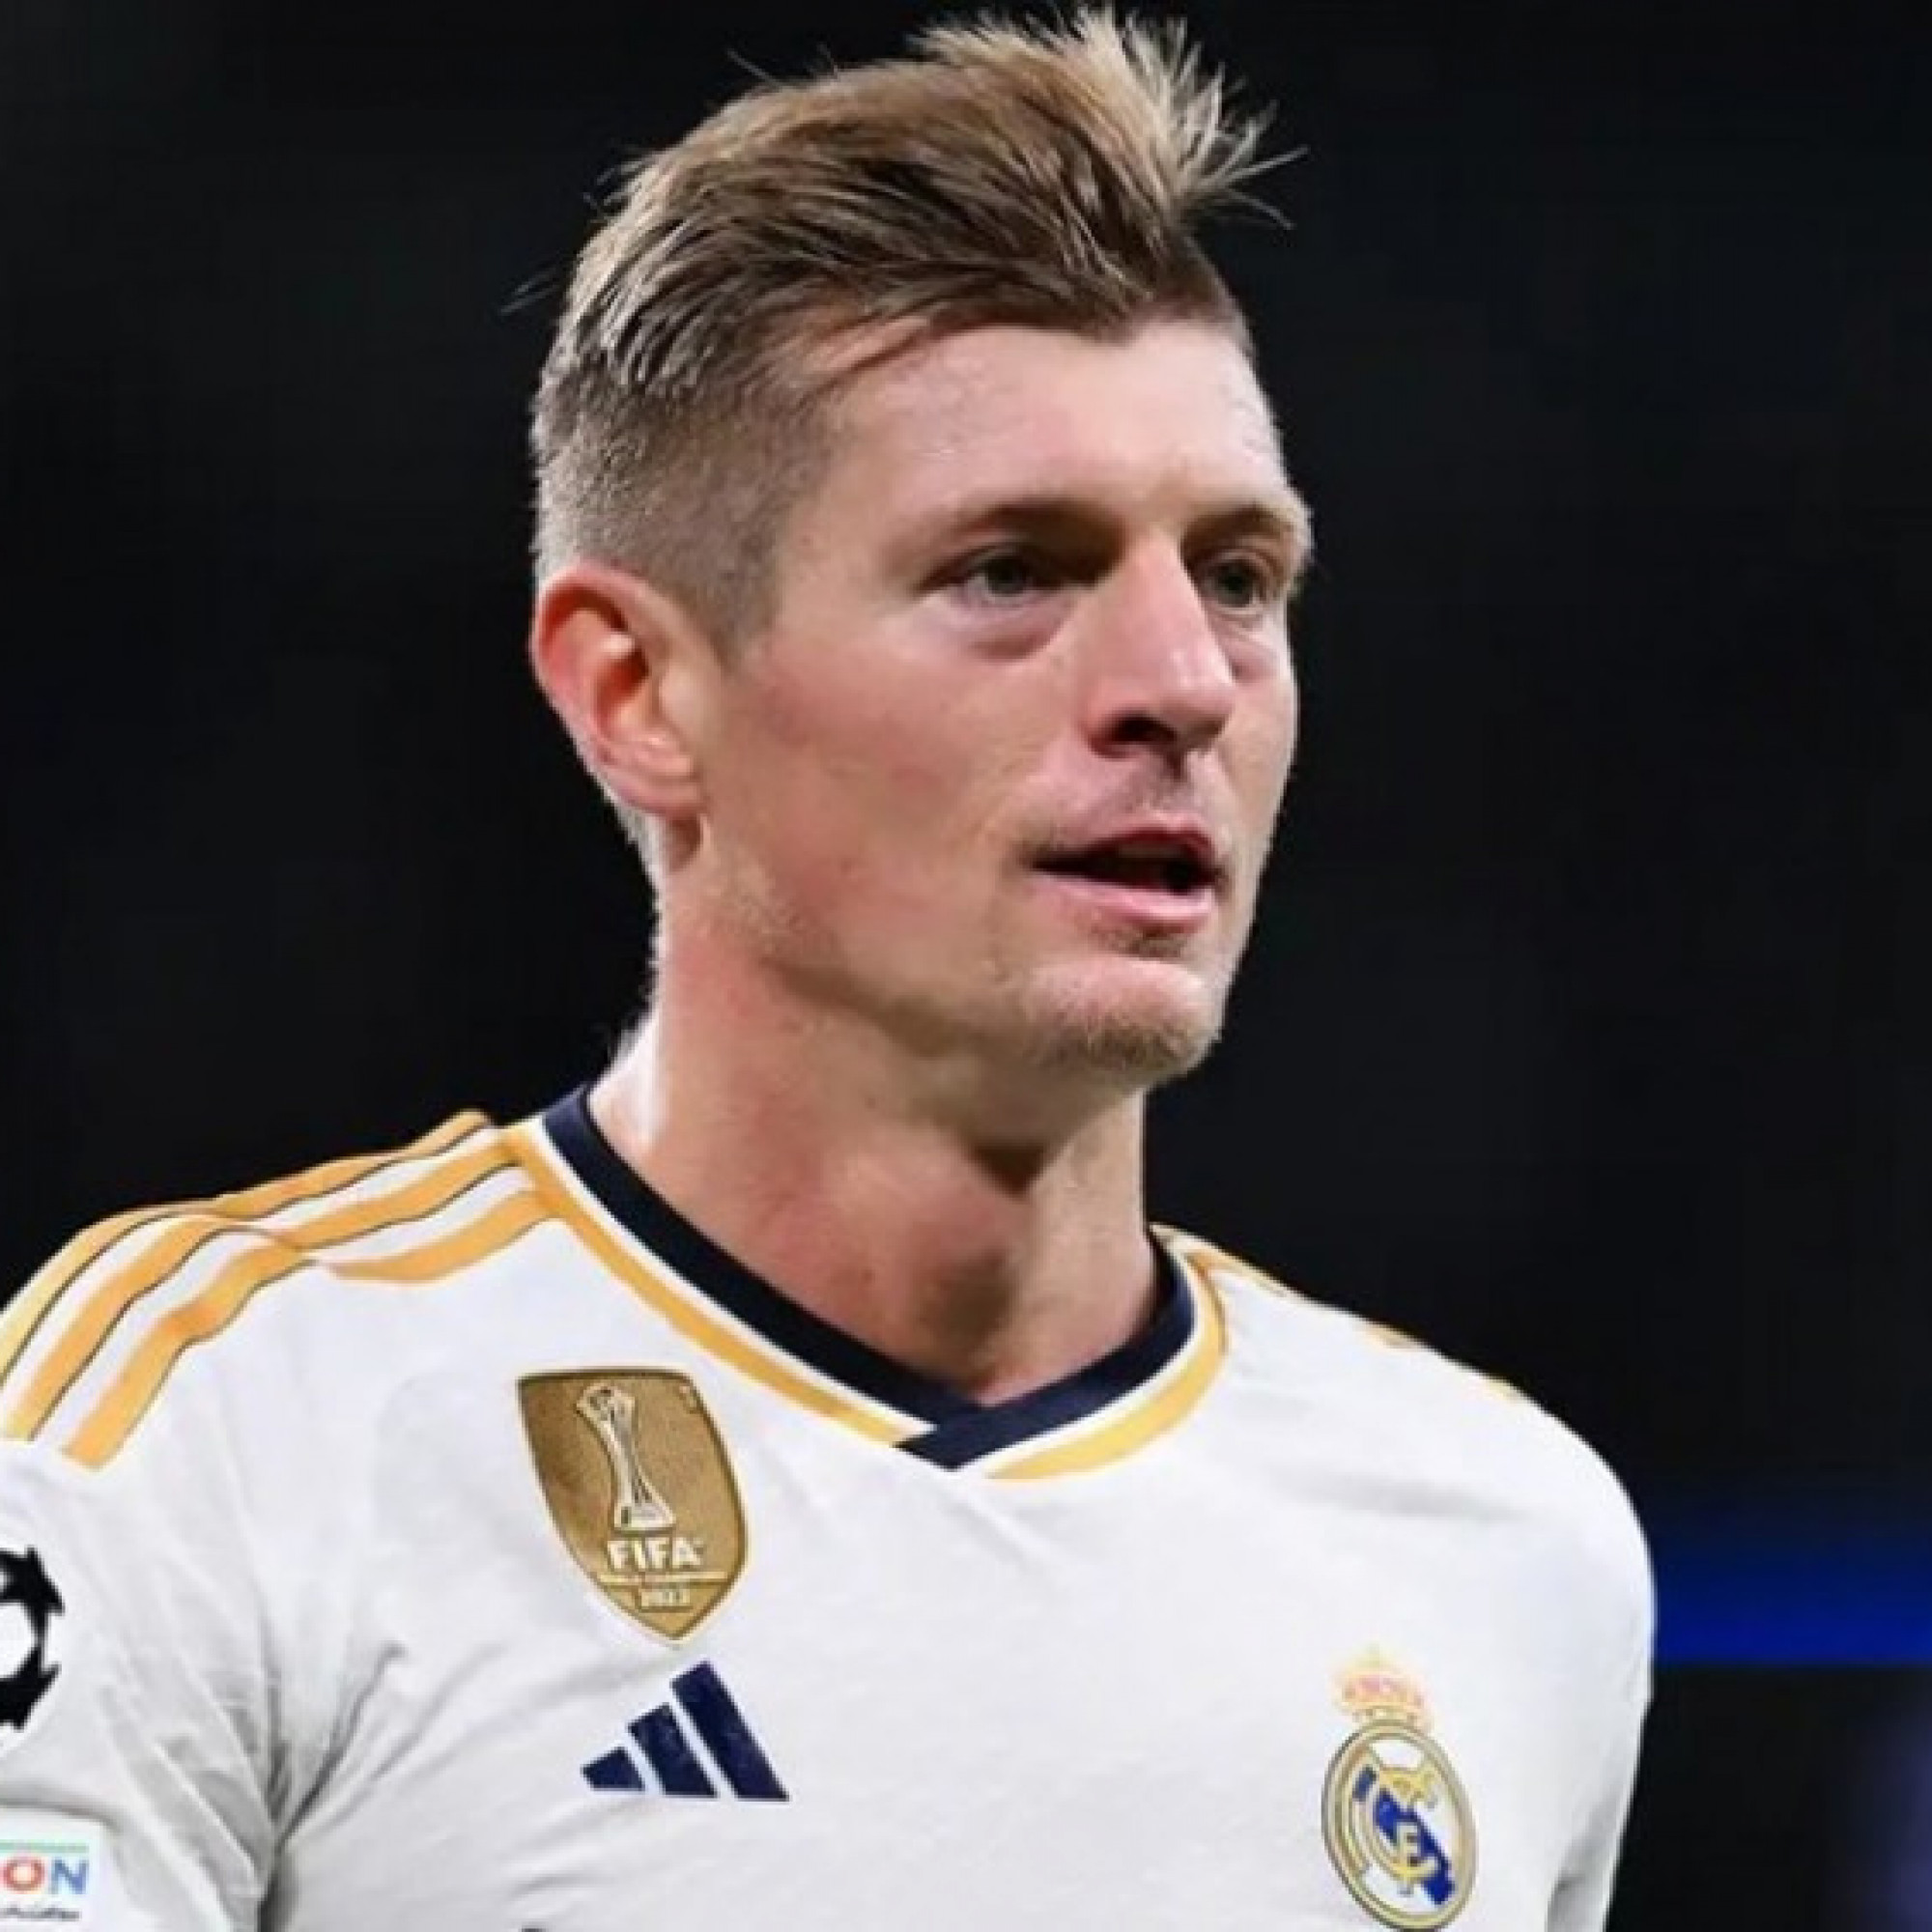  - Toni Kroos bất ngờ tuyên bố giải nghệ sau EURO, không gia hạn với Real Madrid